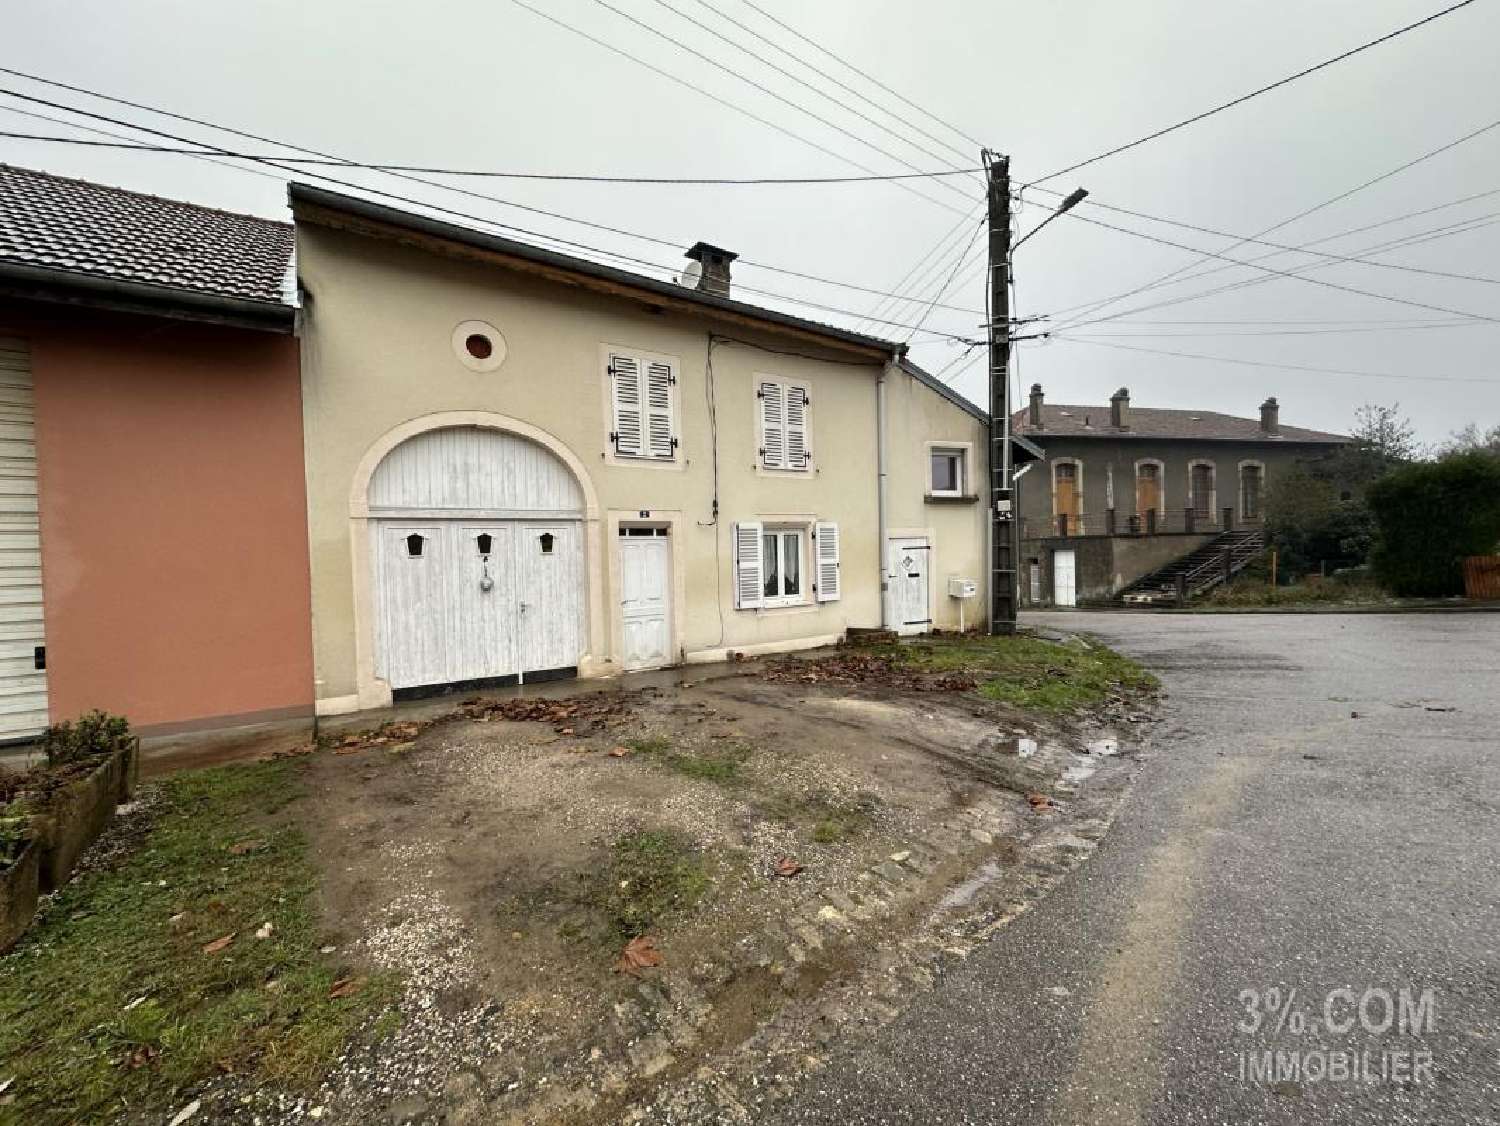  for sale village house Petitmont Meurthe-et-Moselle 3